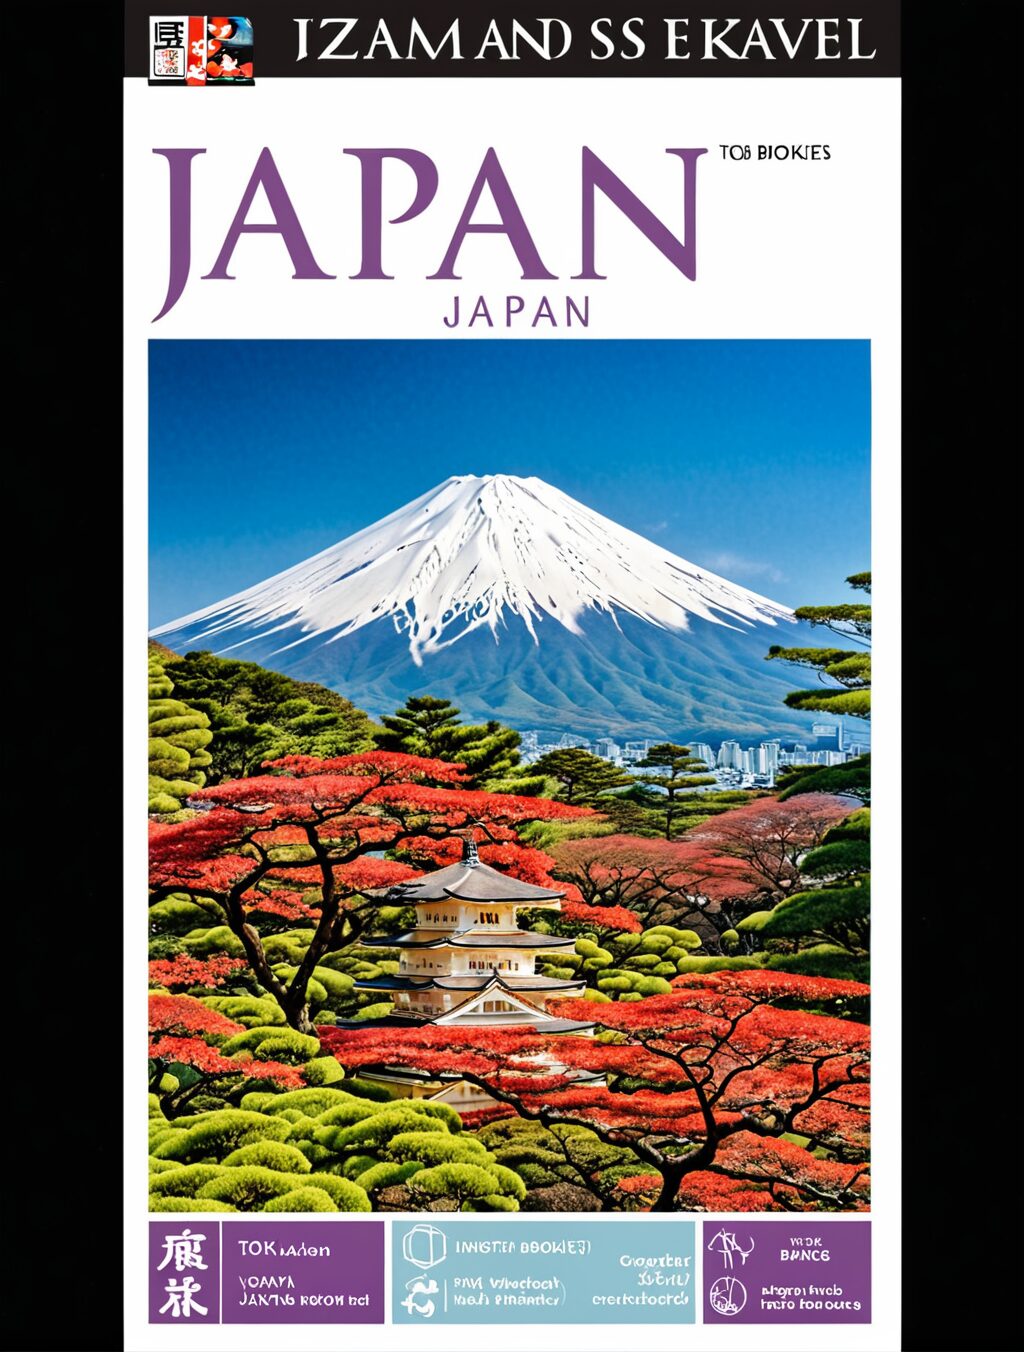 japan travel booklet